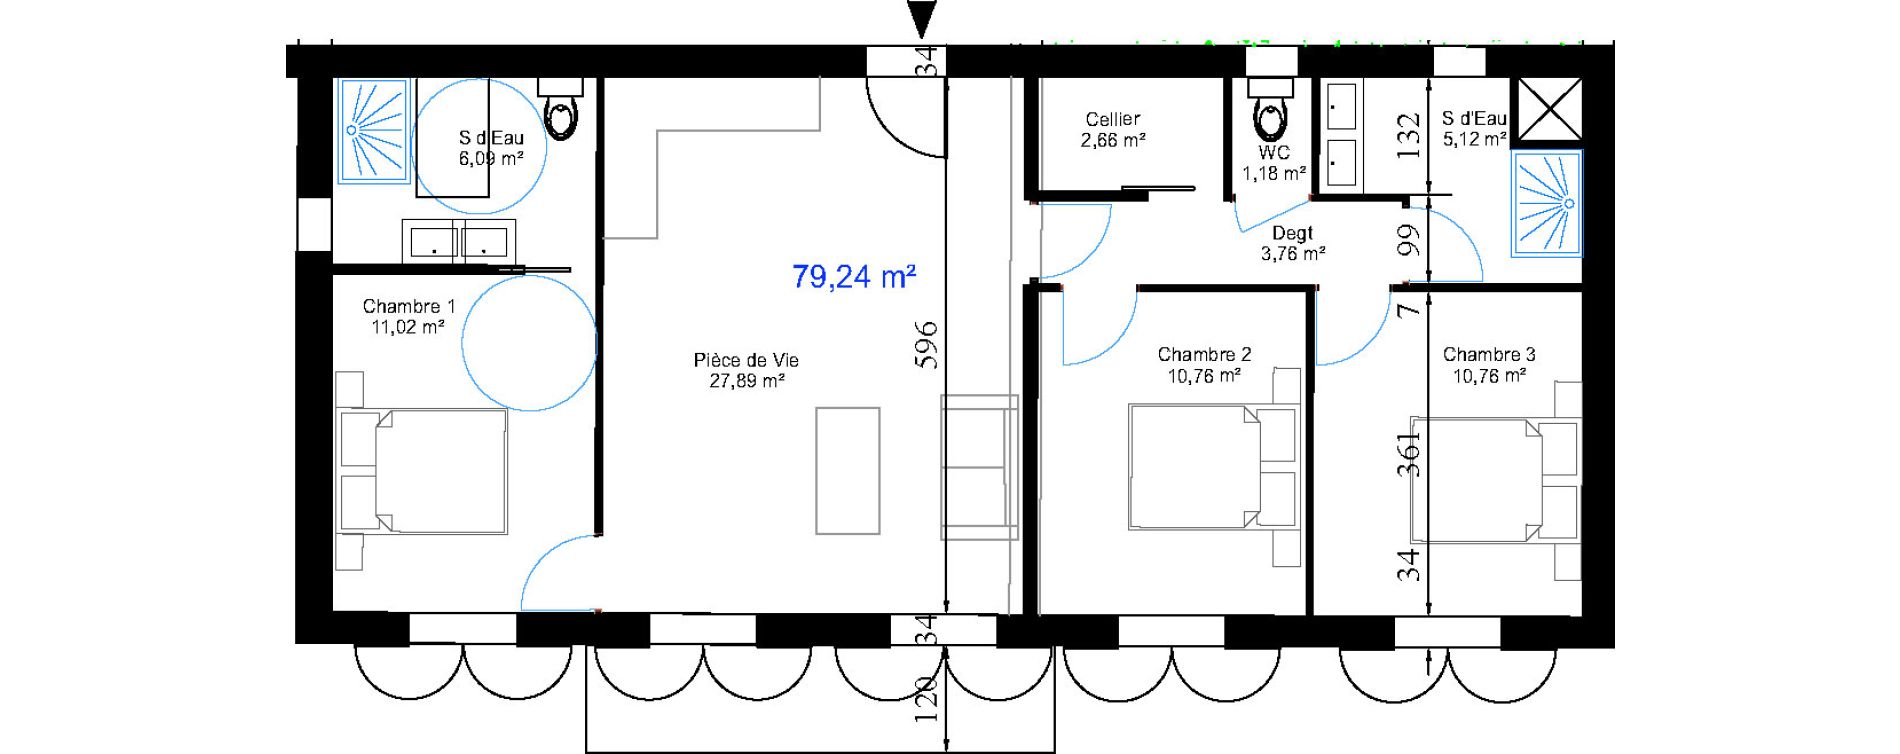 Appartement T4 de 79,24 m2 aux Sables-D'Olonne Le chateau d olonne